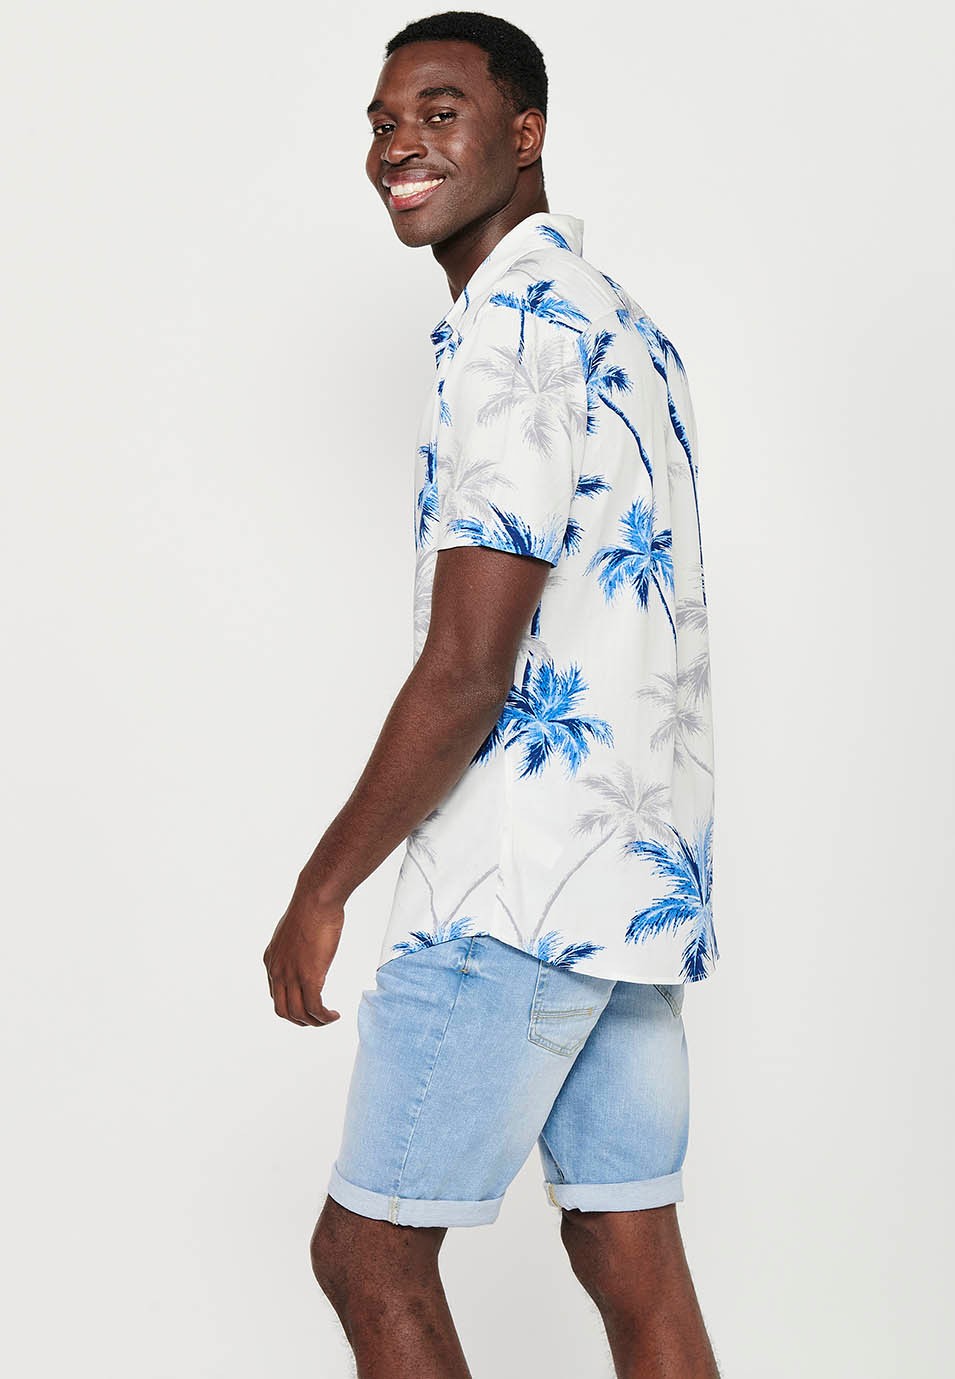 Mehrfarbiges, kurzärmliges Herrenhemd mit tropischem Blumendruck und Hemdkragen